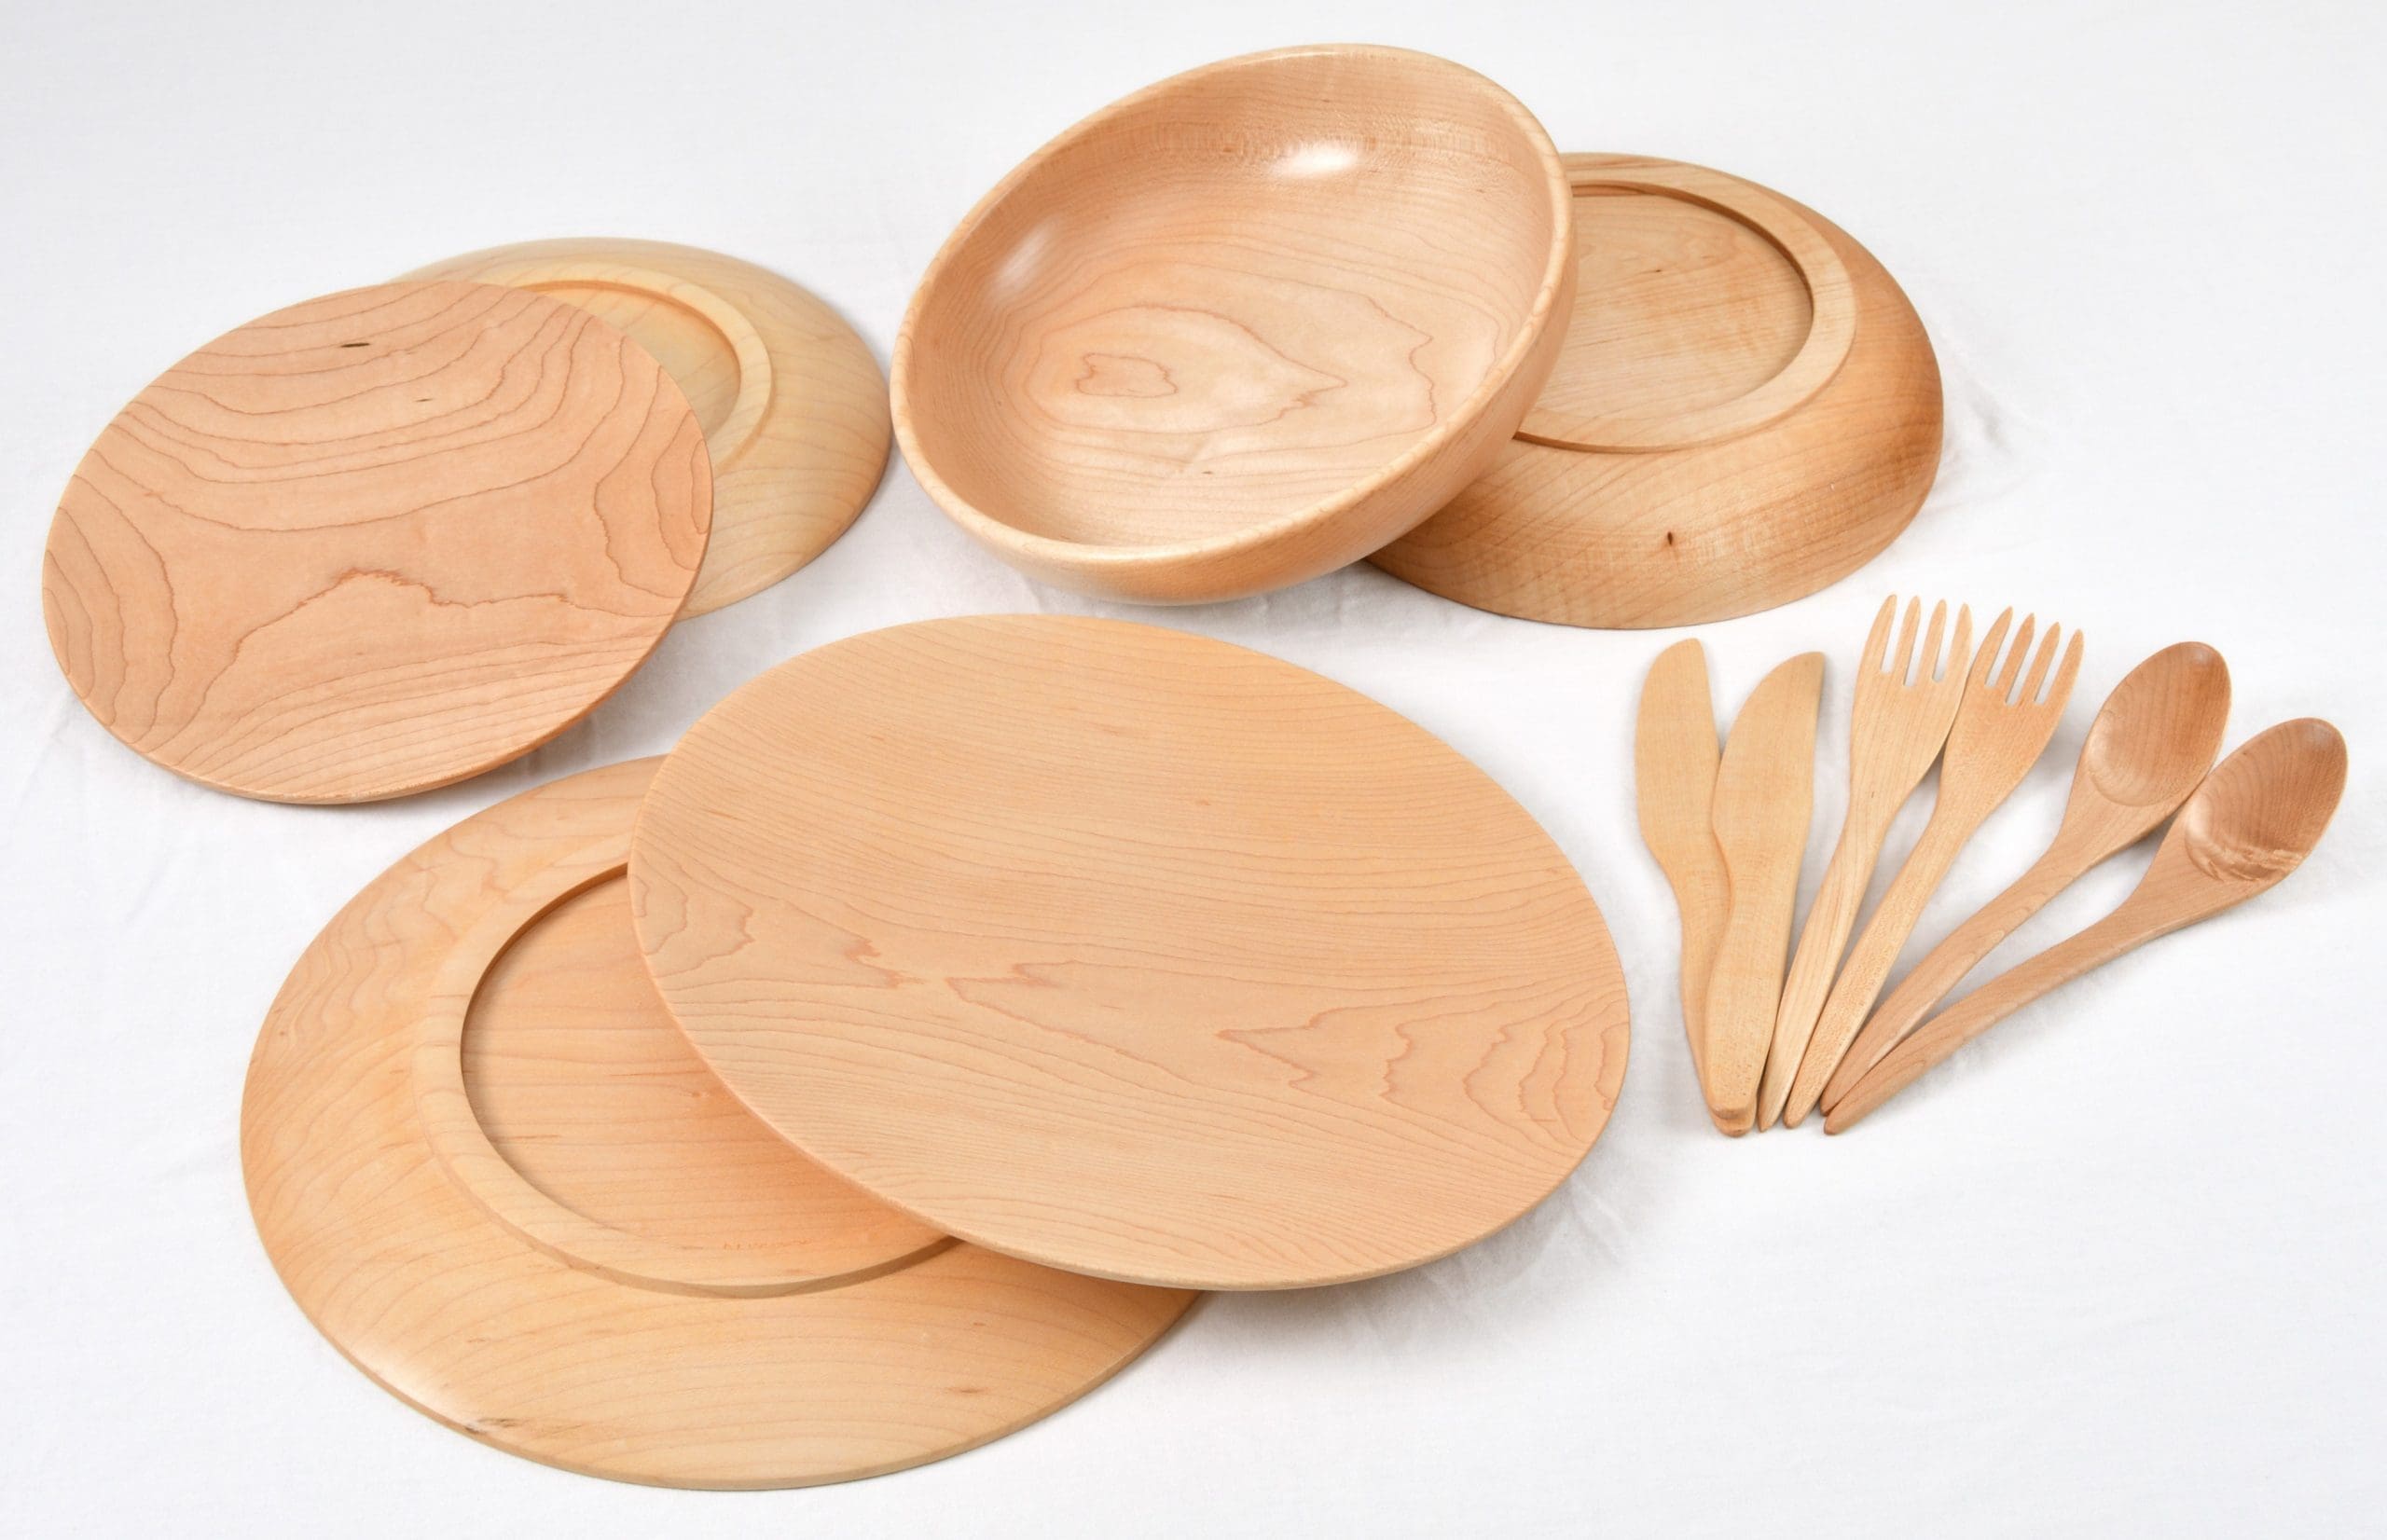 2 Complete Dinnerware Set in Maple Wood